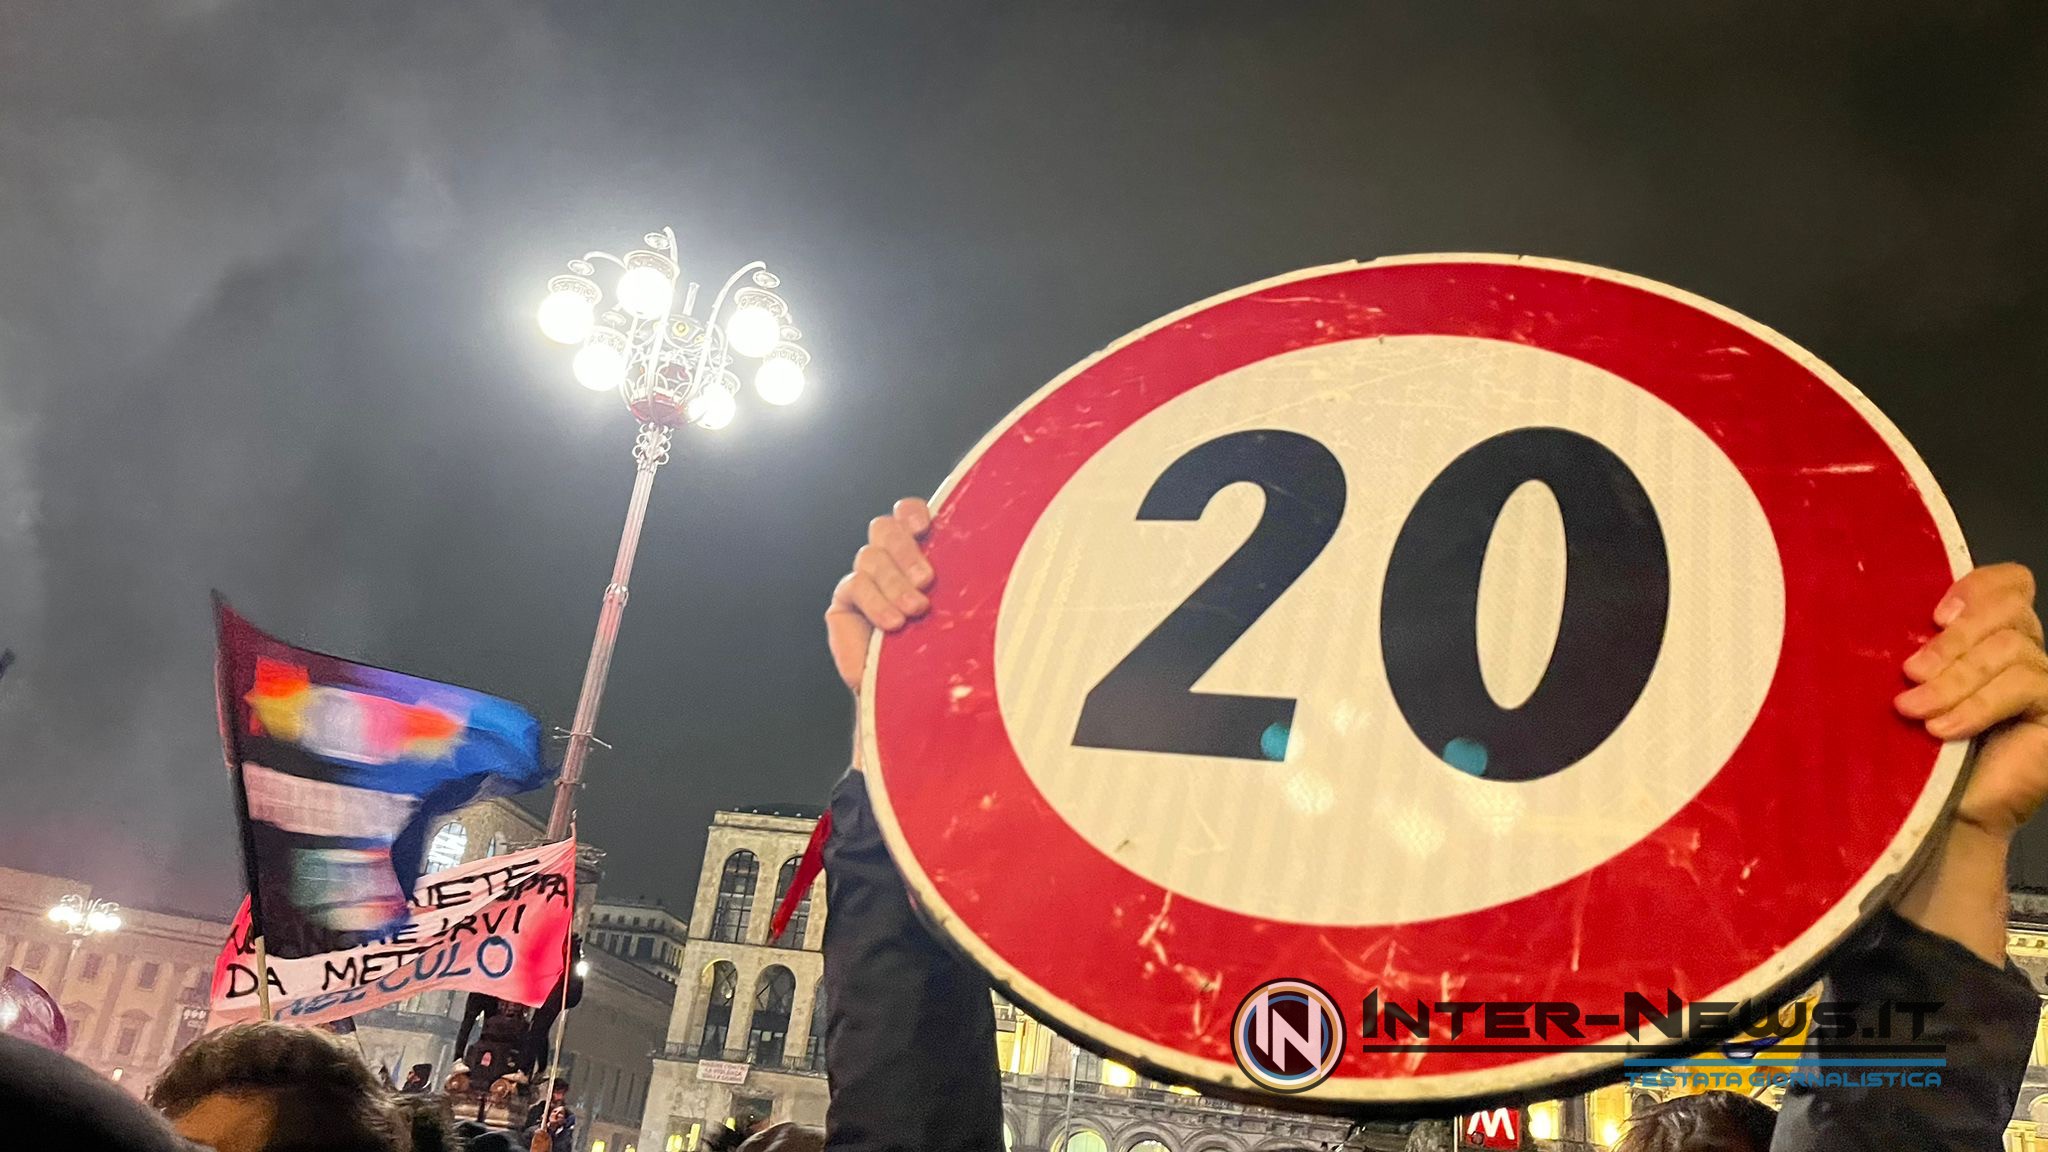 Inter Torino, dopo la partita la festa scudetto! Tutte le informazioni sulla parata – CdS